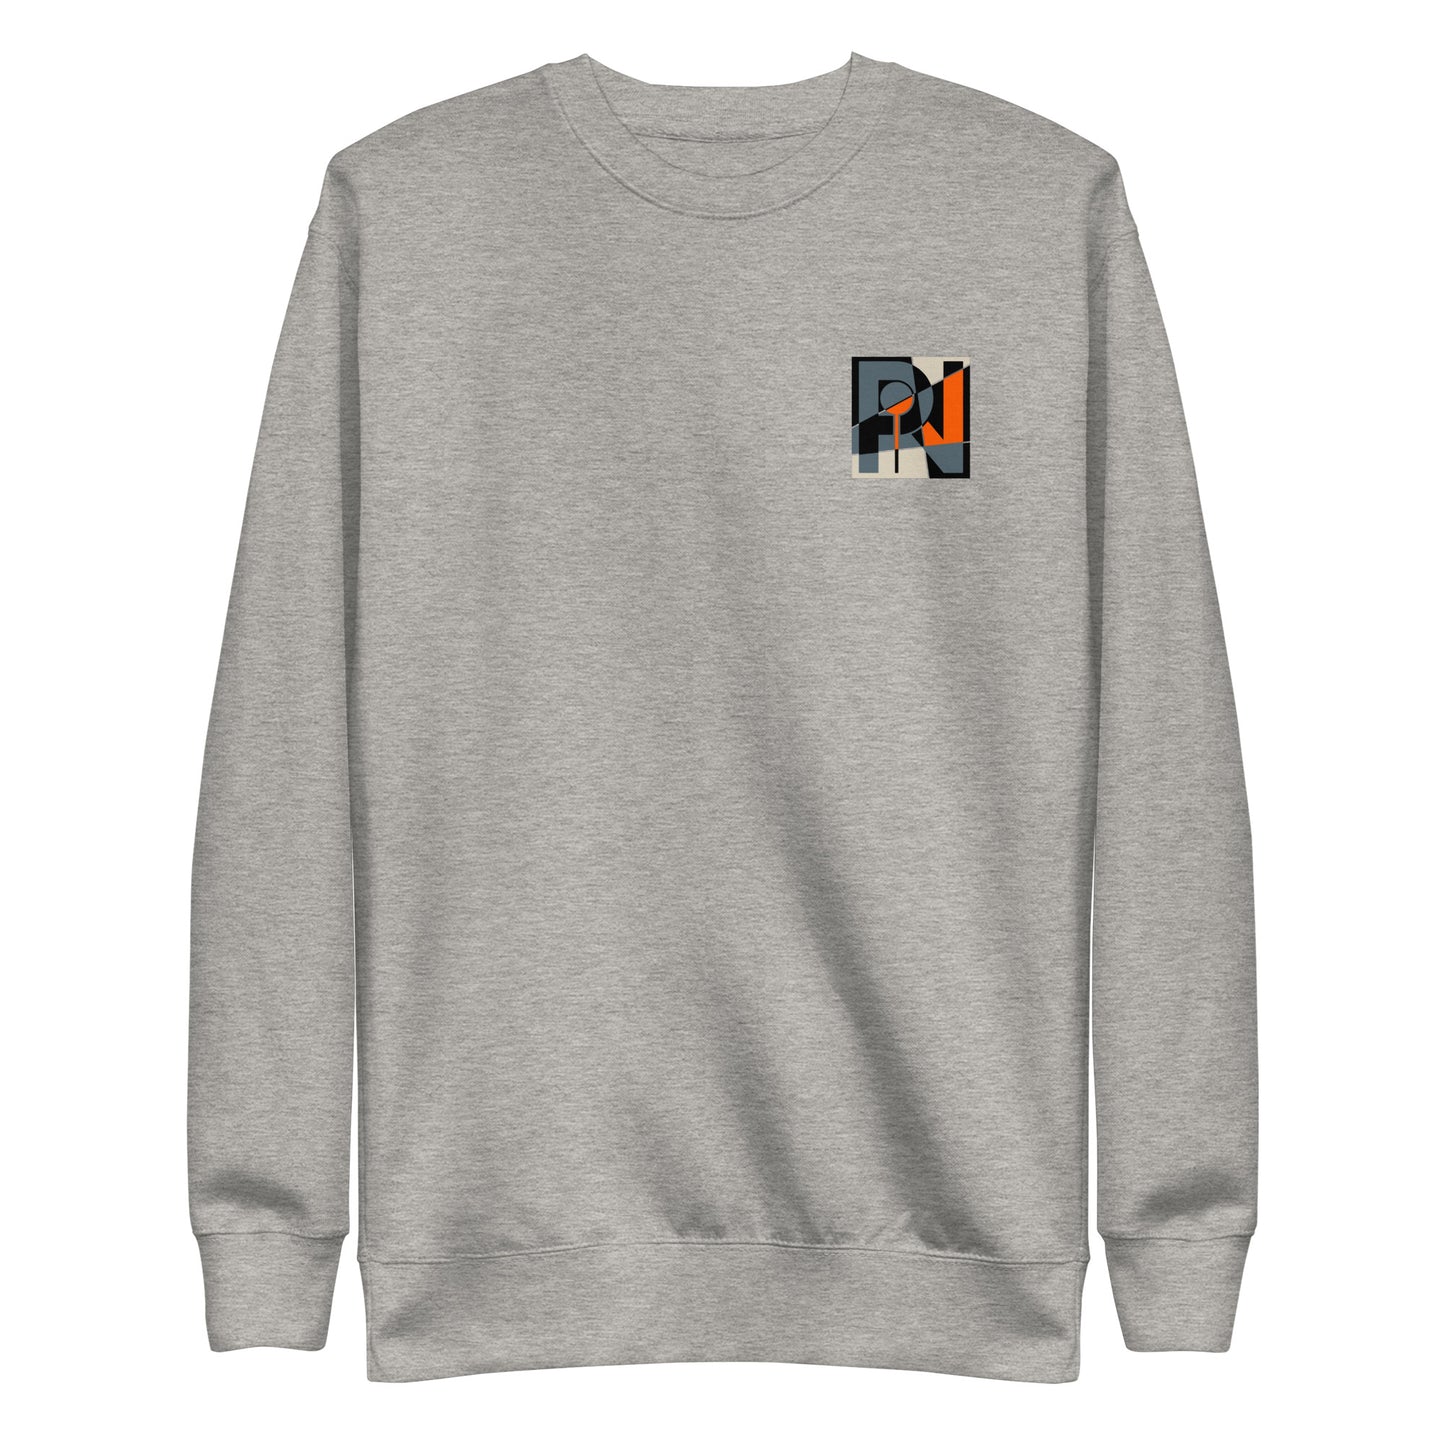 Unisex abstract logo sweatshirt